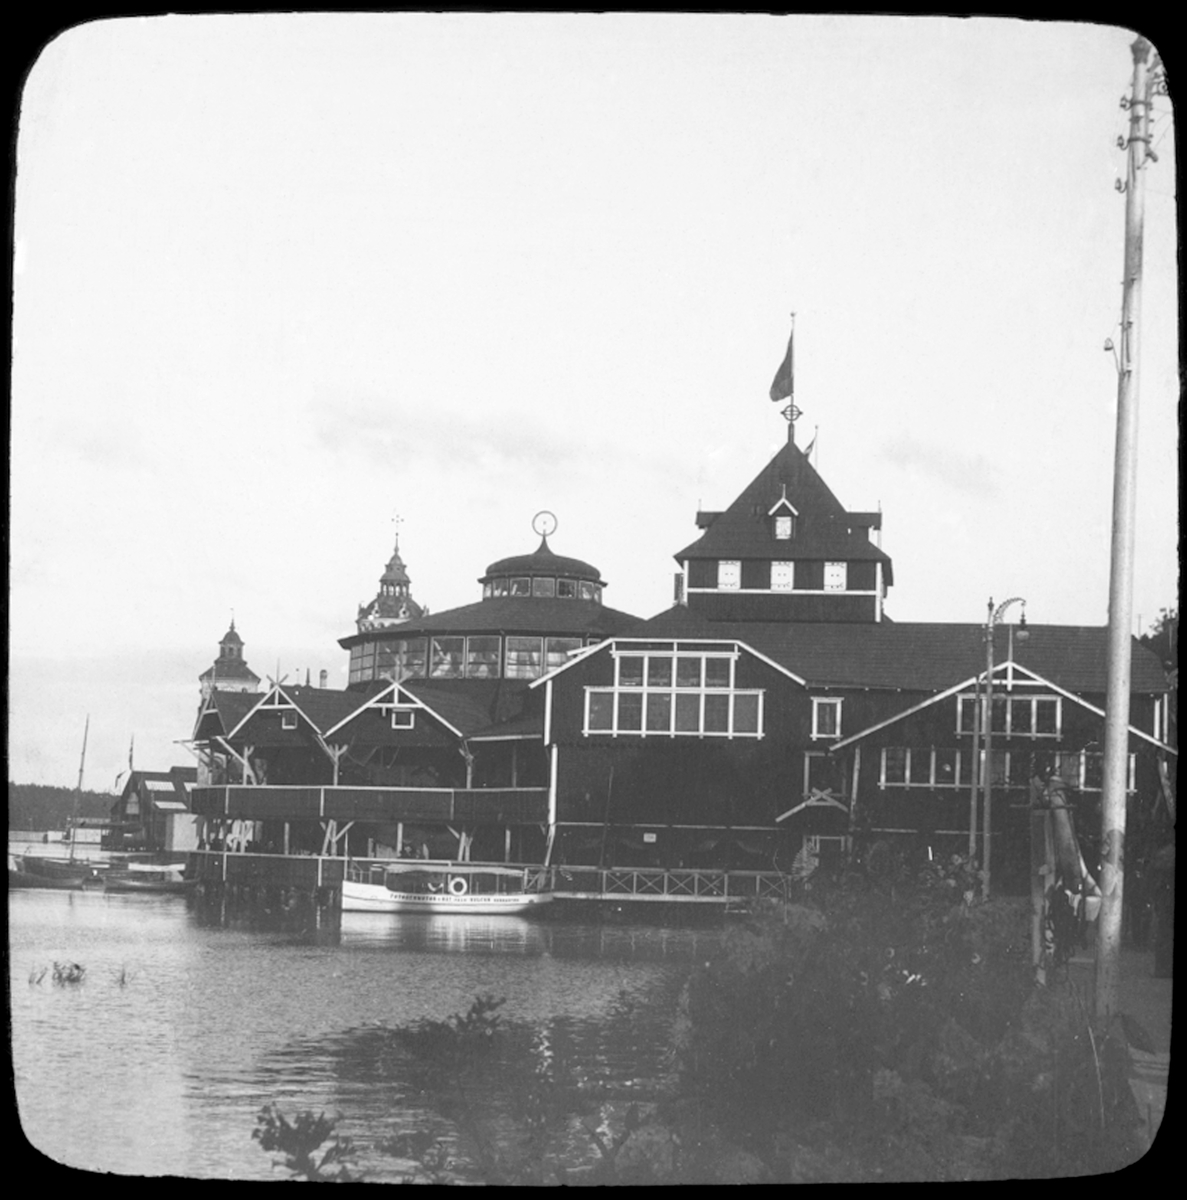 Skiotikonbild från institutionen för fotografi vid Kungliga Tekniska Högskolan. Motiv från Allmänna Konst- och Industriutställningen 1897.